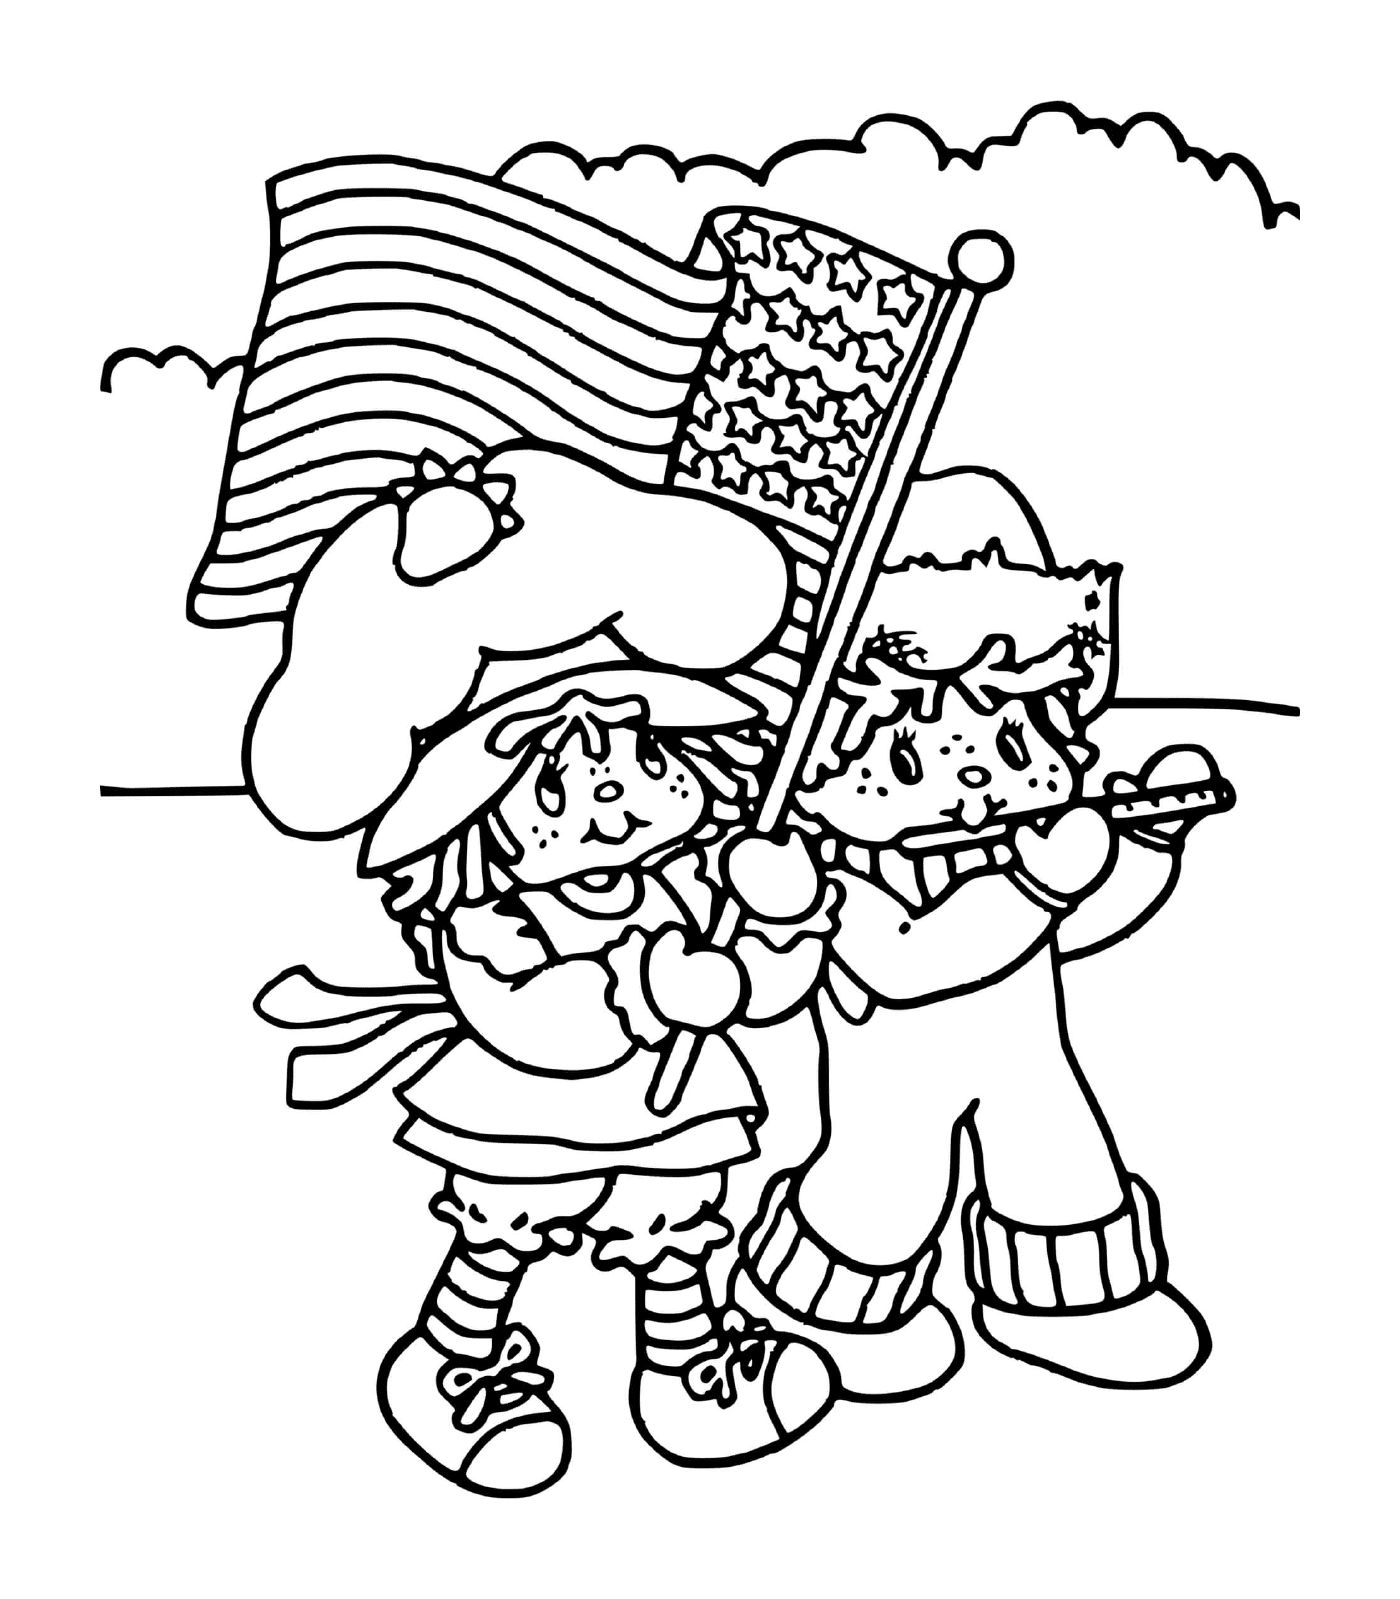  Шарлотта в клубнике с американским флагом 